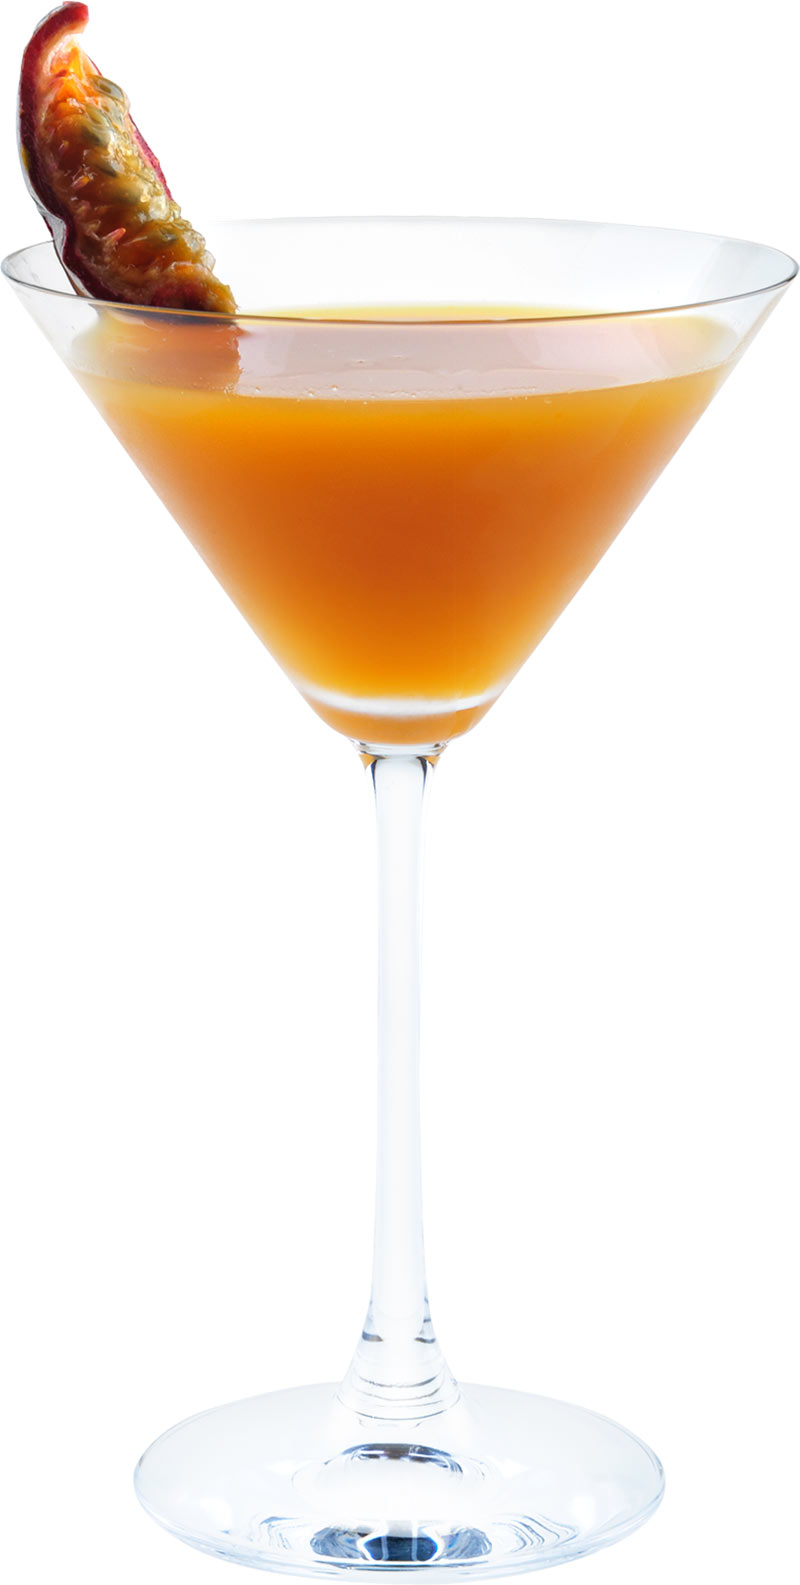 Comment préparer le cocktail Passion gingembre